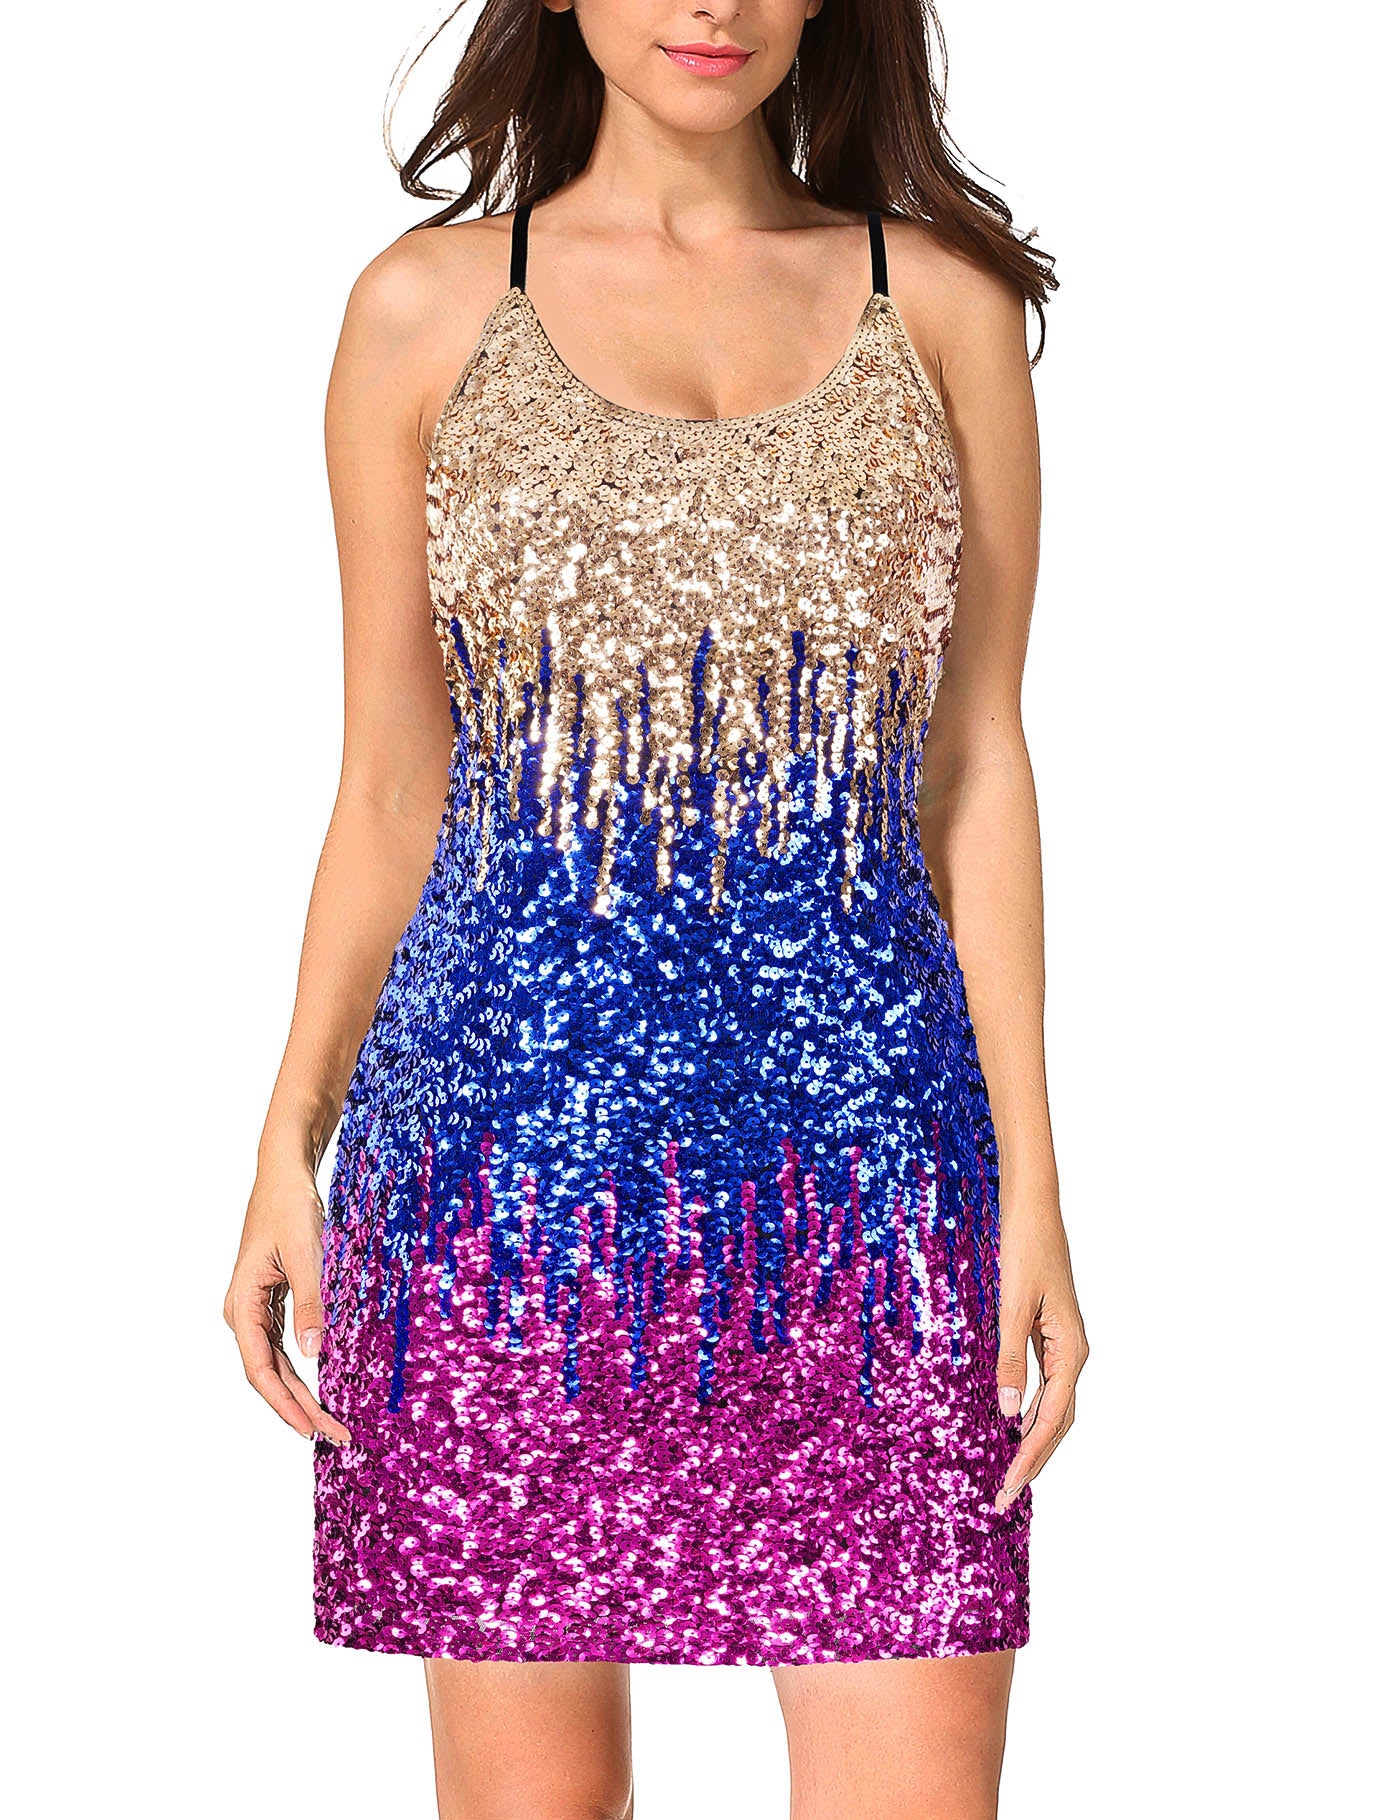 Women's Glitter Spaghetti Strap Sequin Dress For Party | MANER